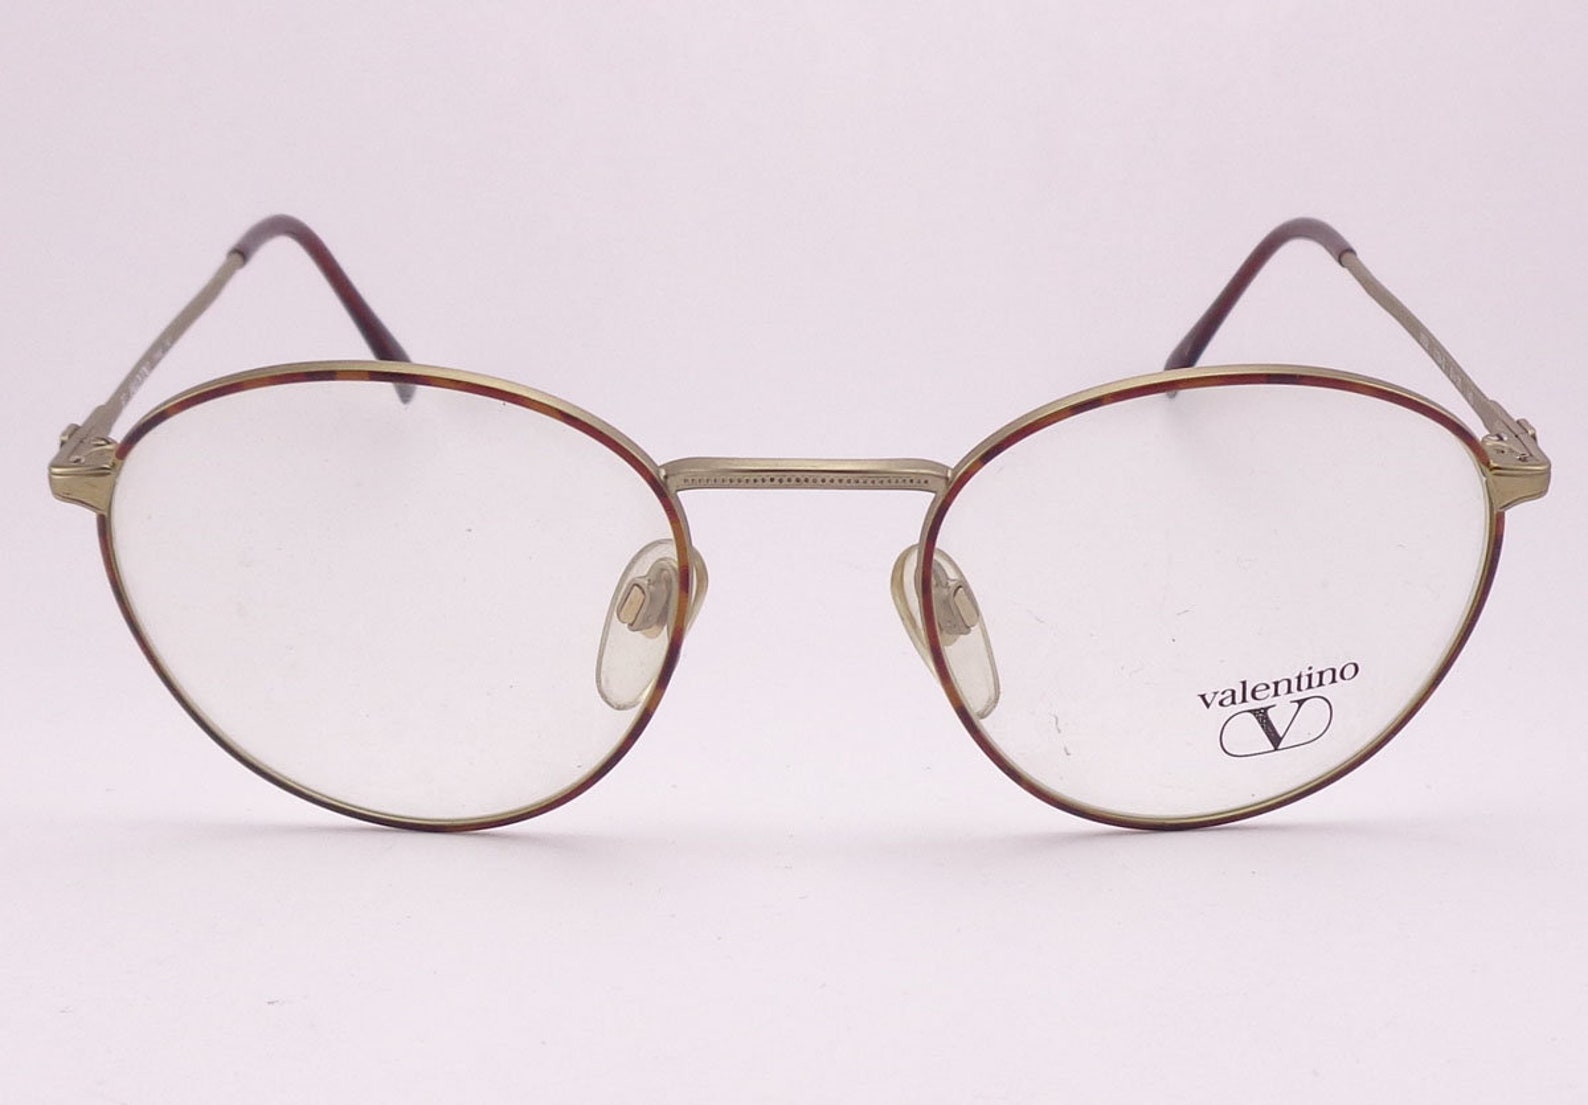 Valentino V352 Panthos Eyeglasses Vintage Made in Italy - Etsy